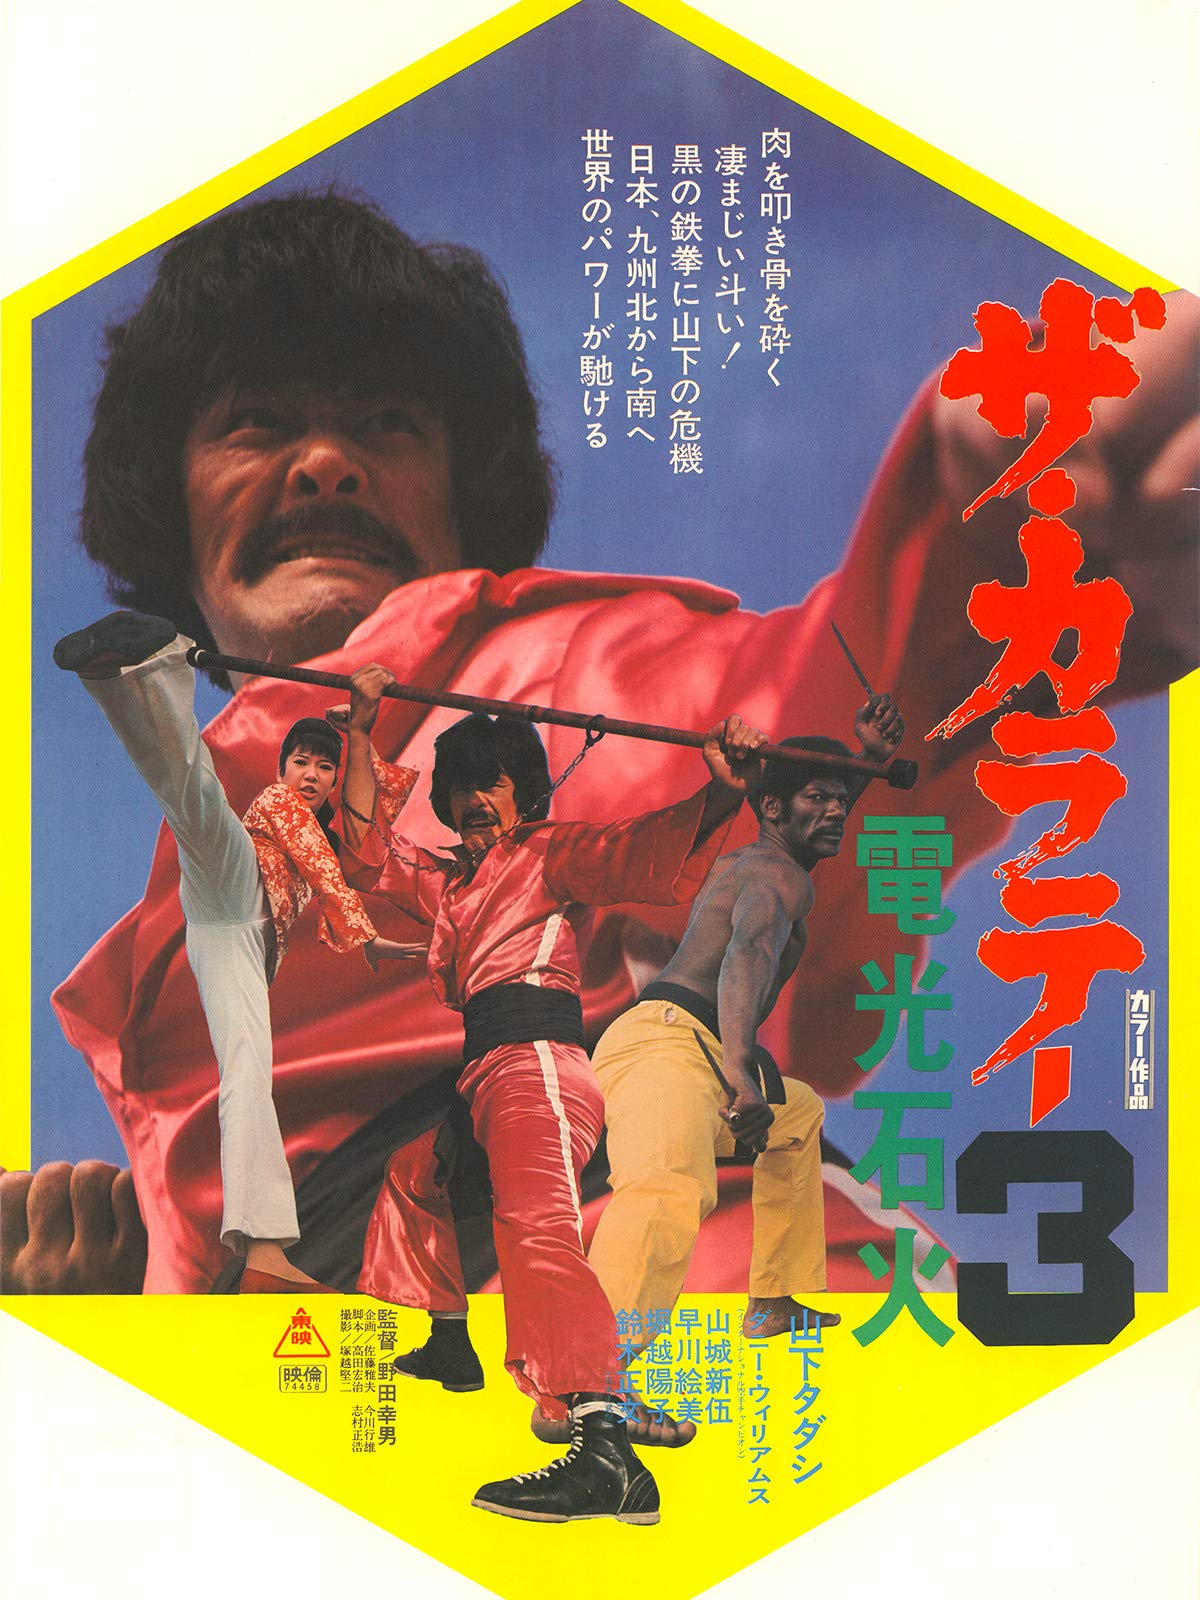 Za karate 3: Denkô sekka (1975) Screenshot 4